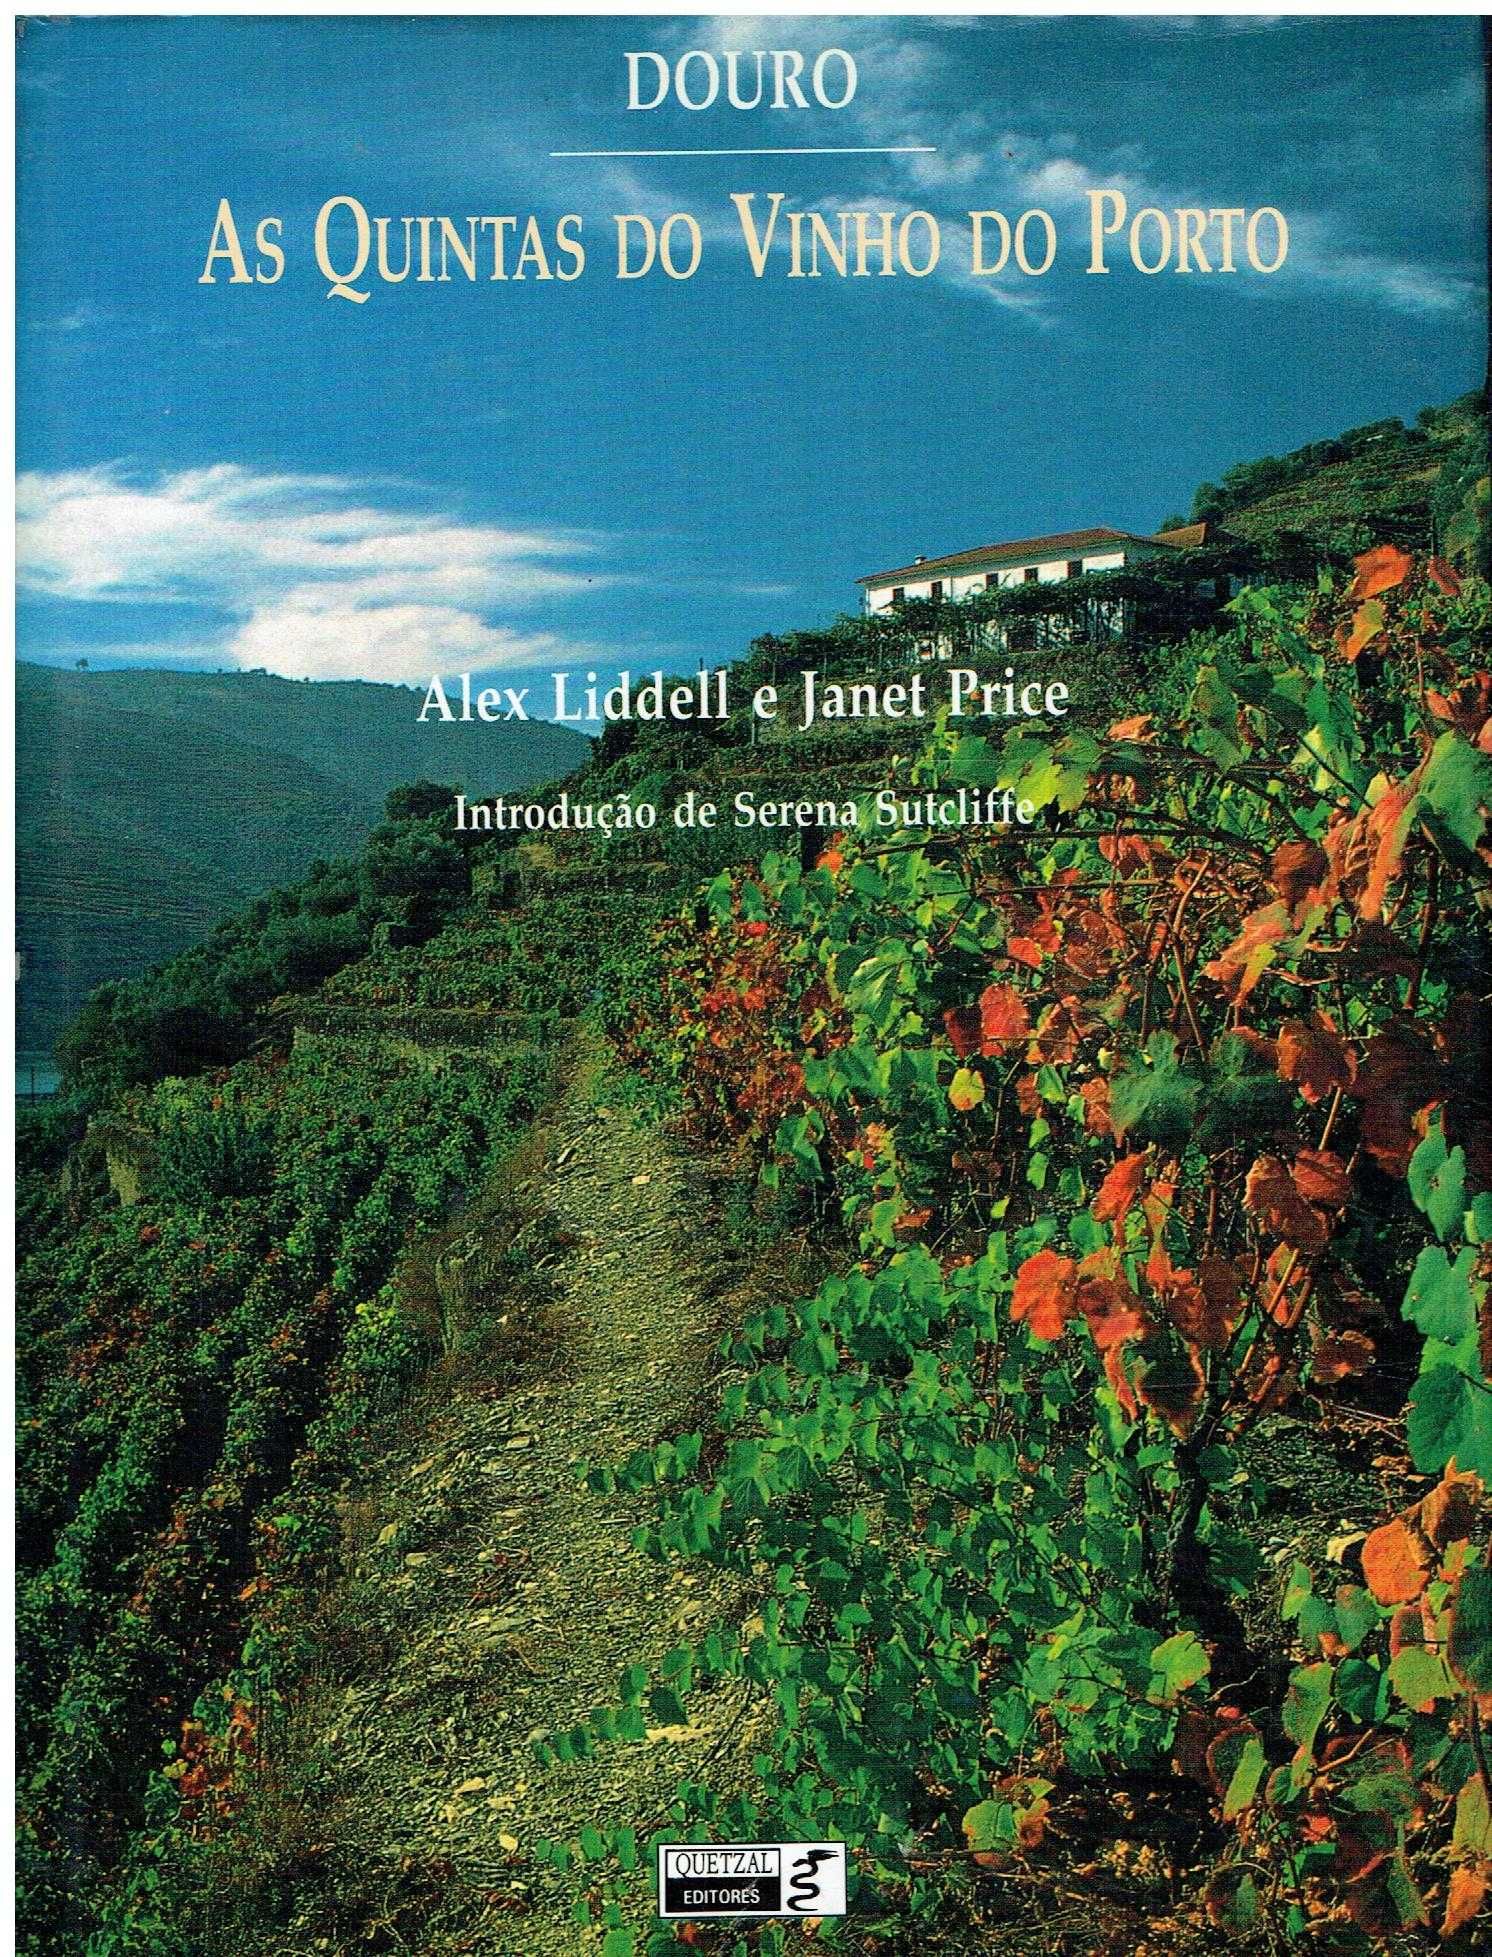 5964

As Quintas do Vinho do Porto
De Alex Liddell e Janet Price